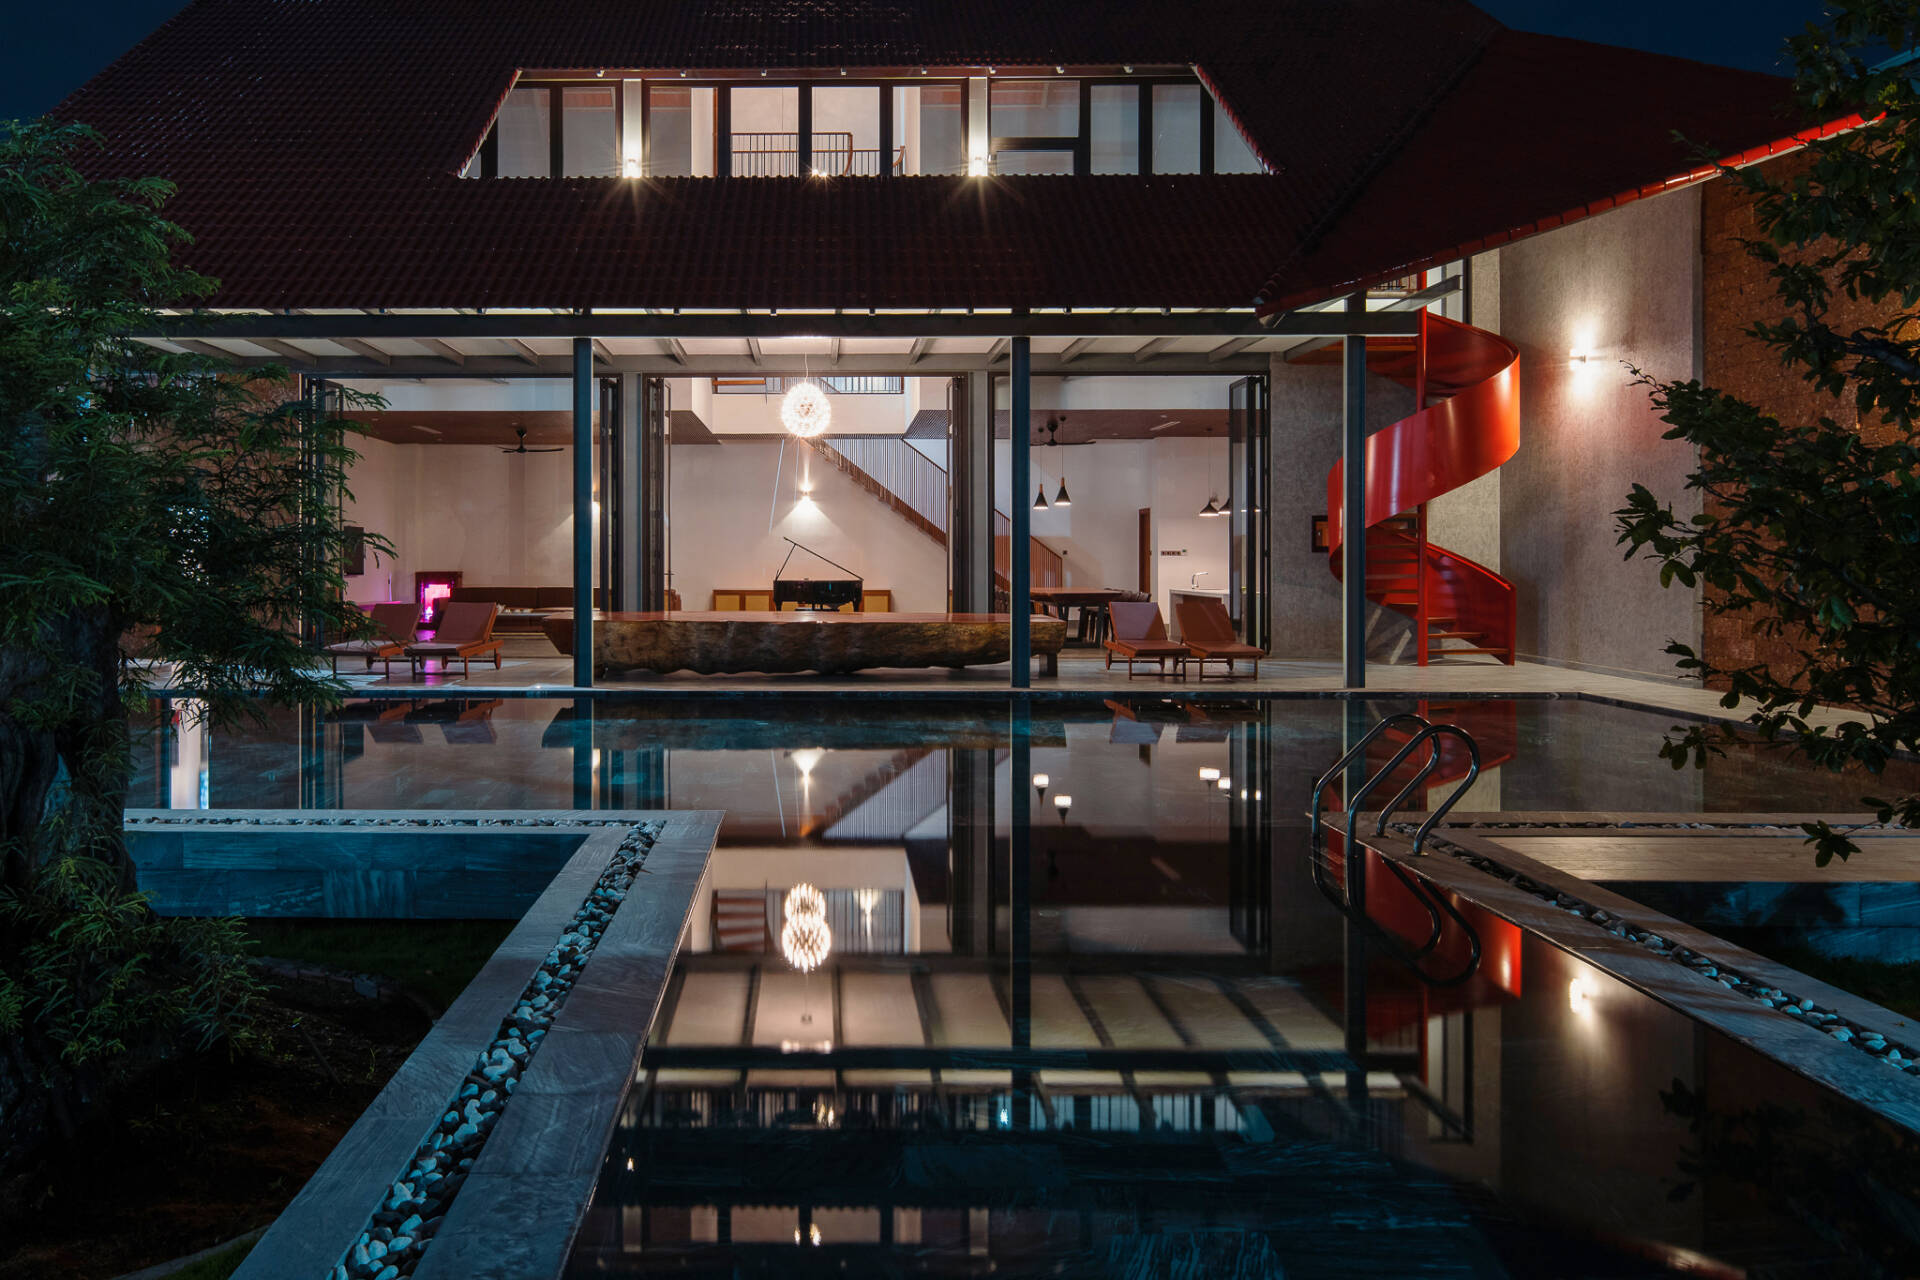 Khi về đêm, những ánh đèn hắt ra từ trong nhà và cả khu vực bể bơi tạo nên hiệu ứng phản chiếu hình ảnh không gian tầng 1 xuống đáy nước long lanh huyền ảo.